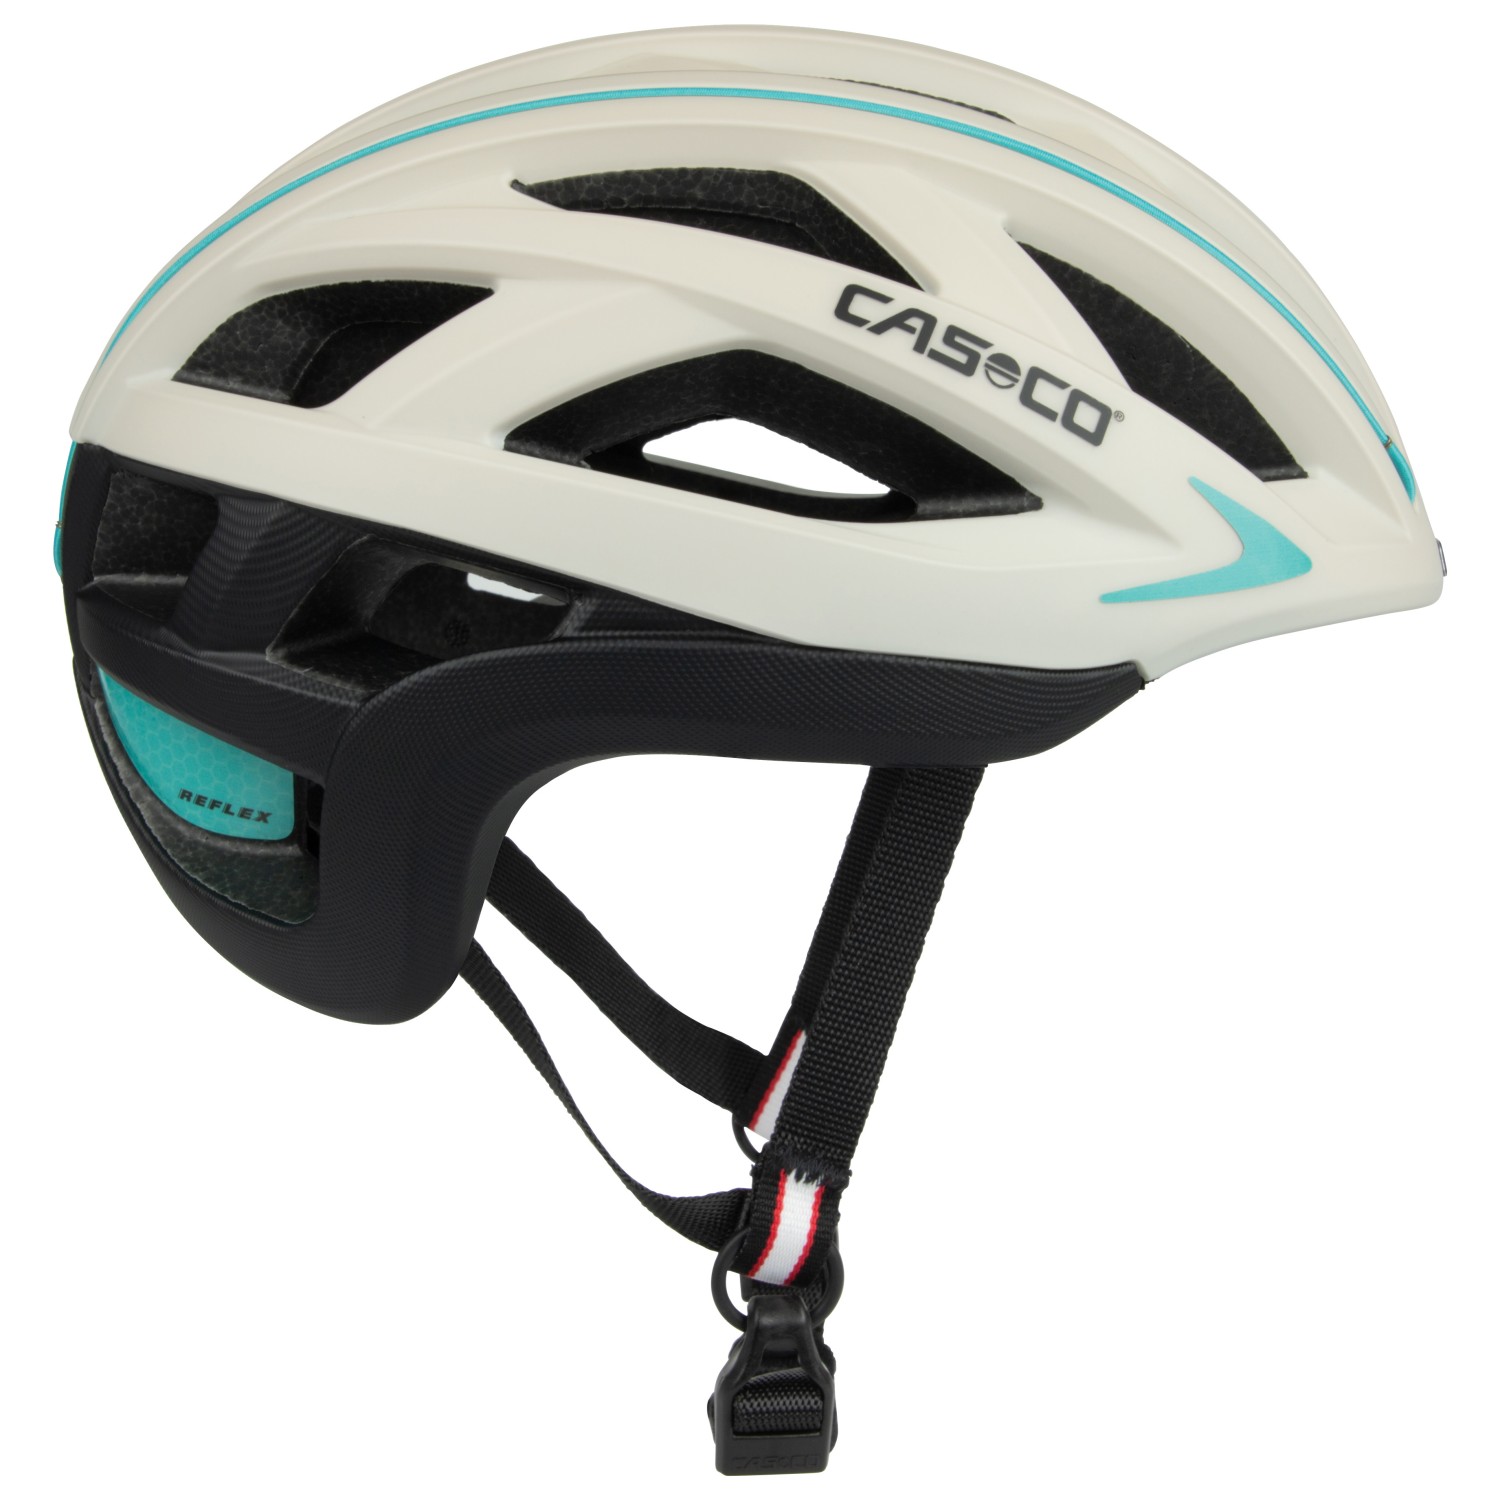 Велосипедный шлем Casco Cuda 2 Strada, цвет White/Turquise/Black